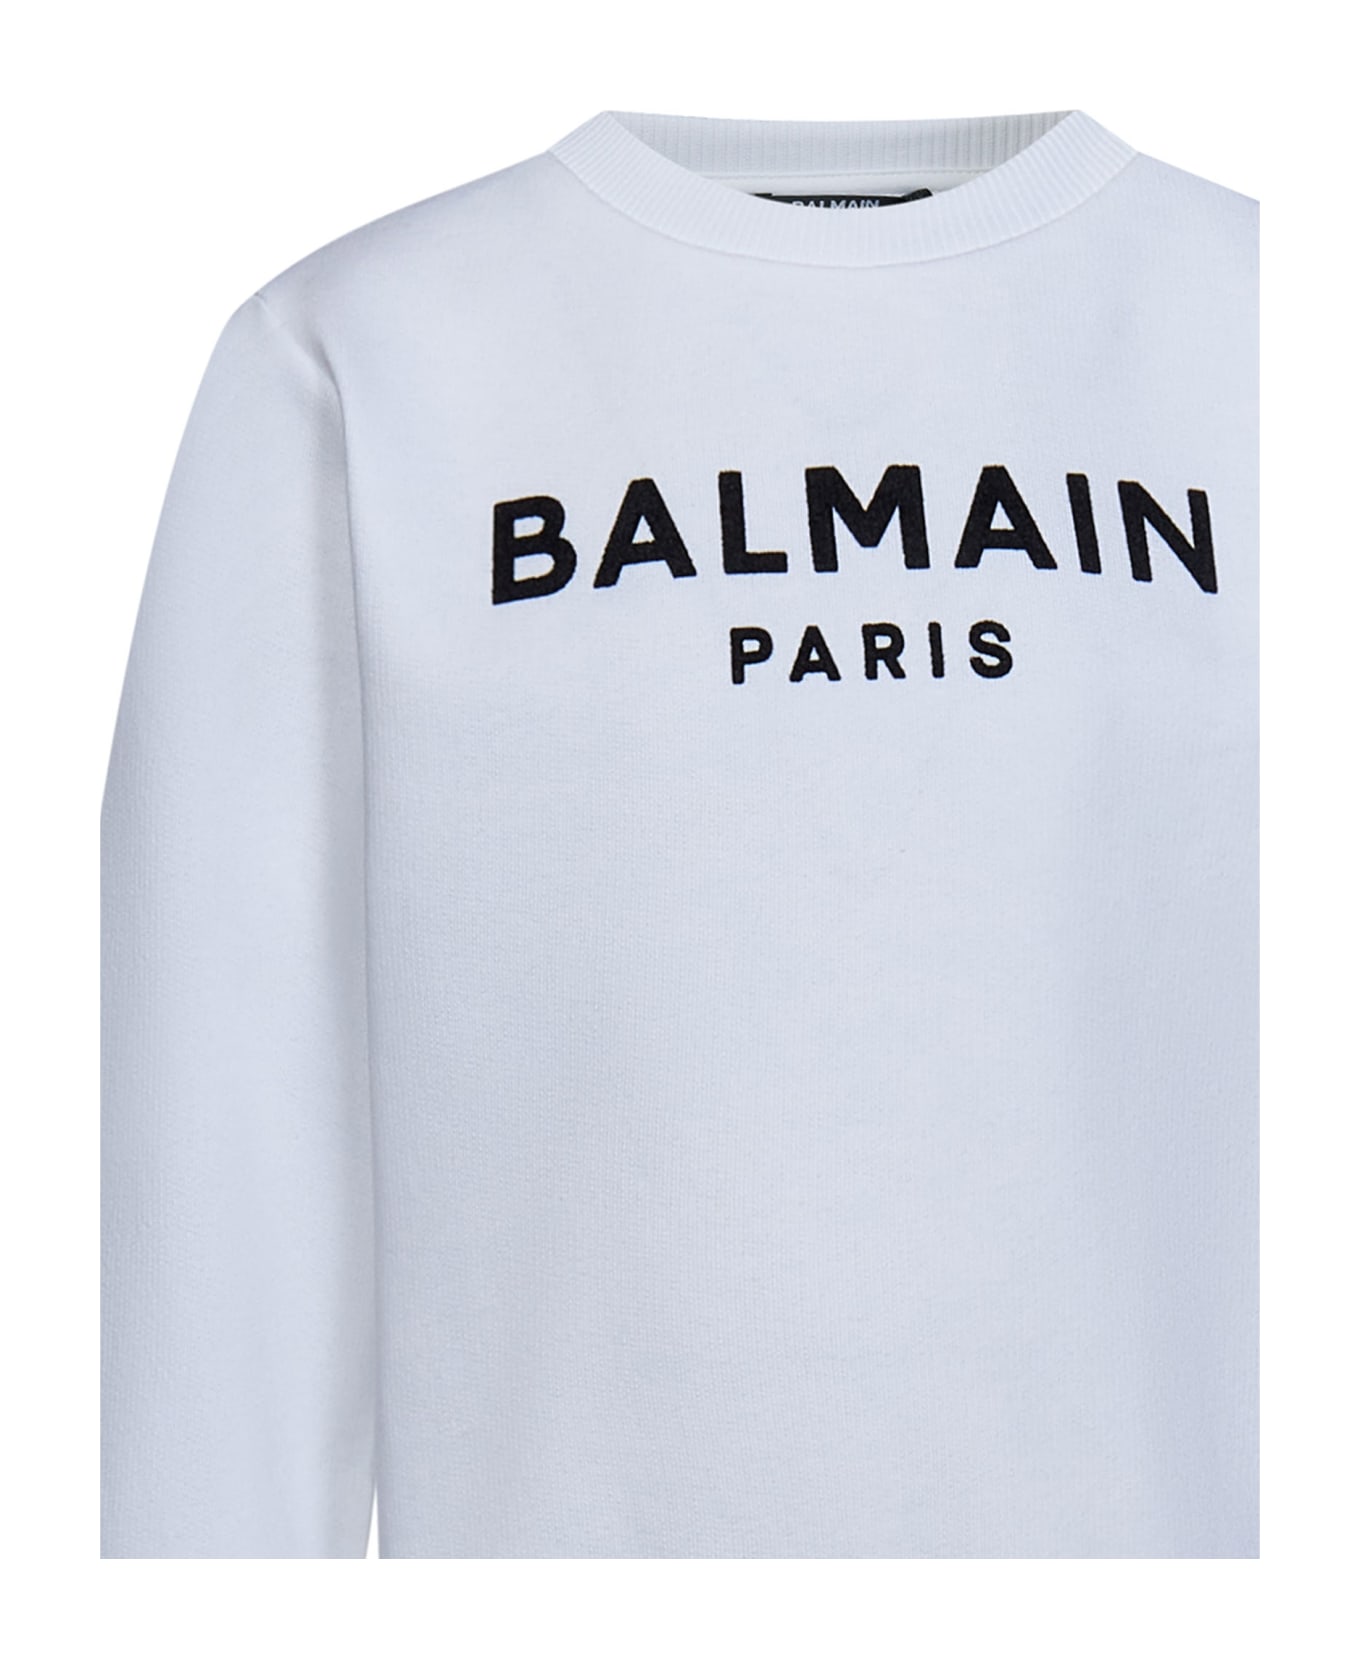 Balmain Sweatshirt - White/black